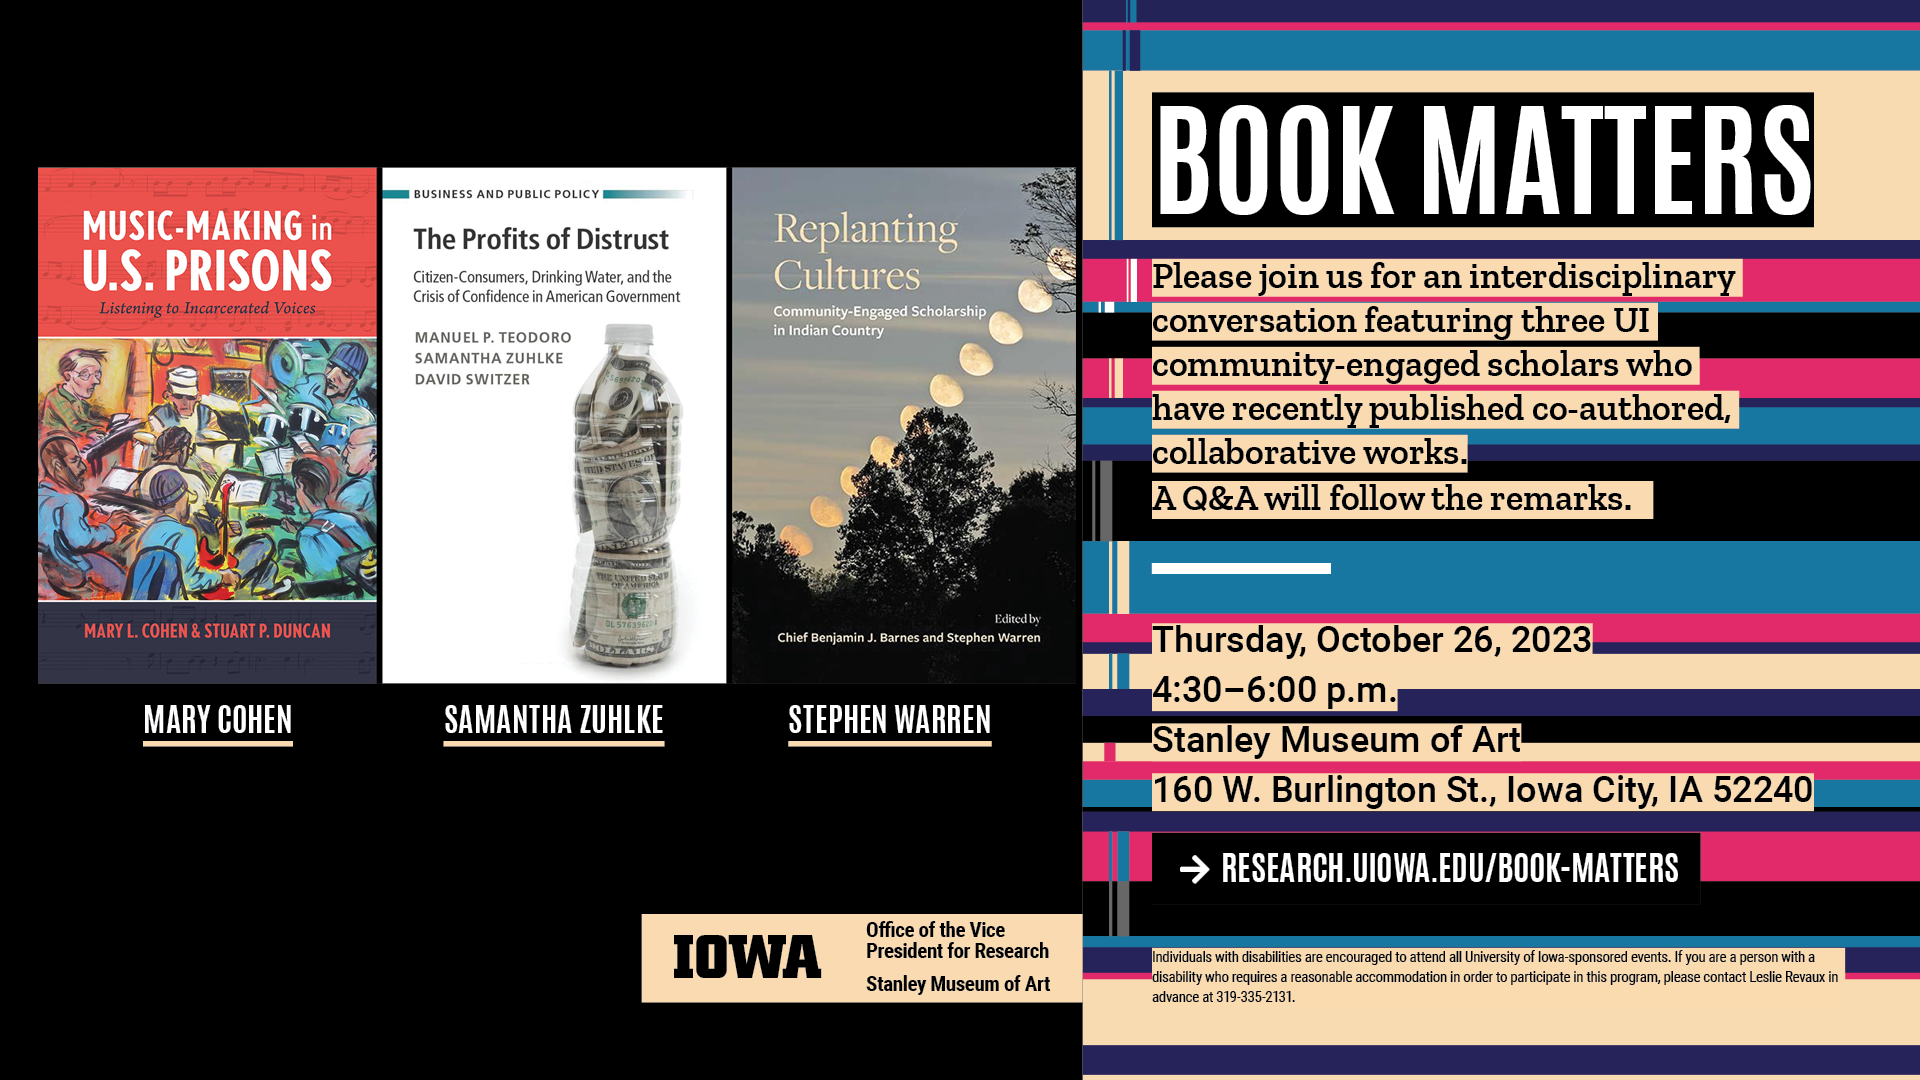 Book Matters Thursday, October 26, 2023, 4:30-6:00 pm, Stanley Museum of Art. research.uiowa.edu/book-matters